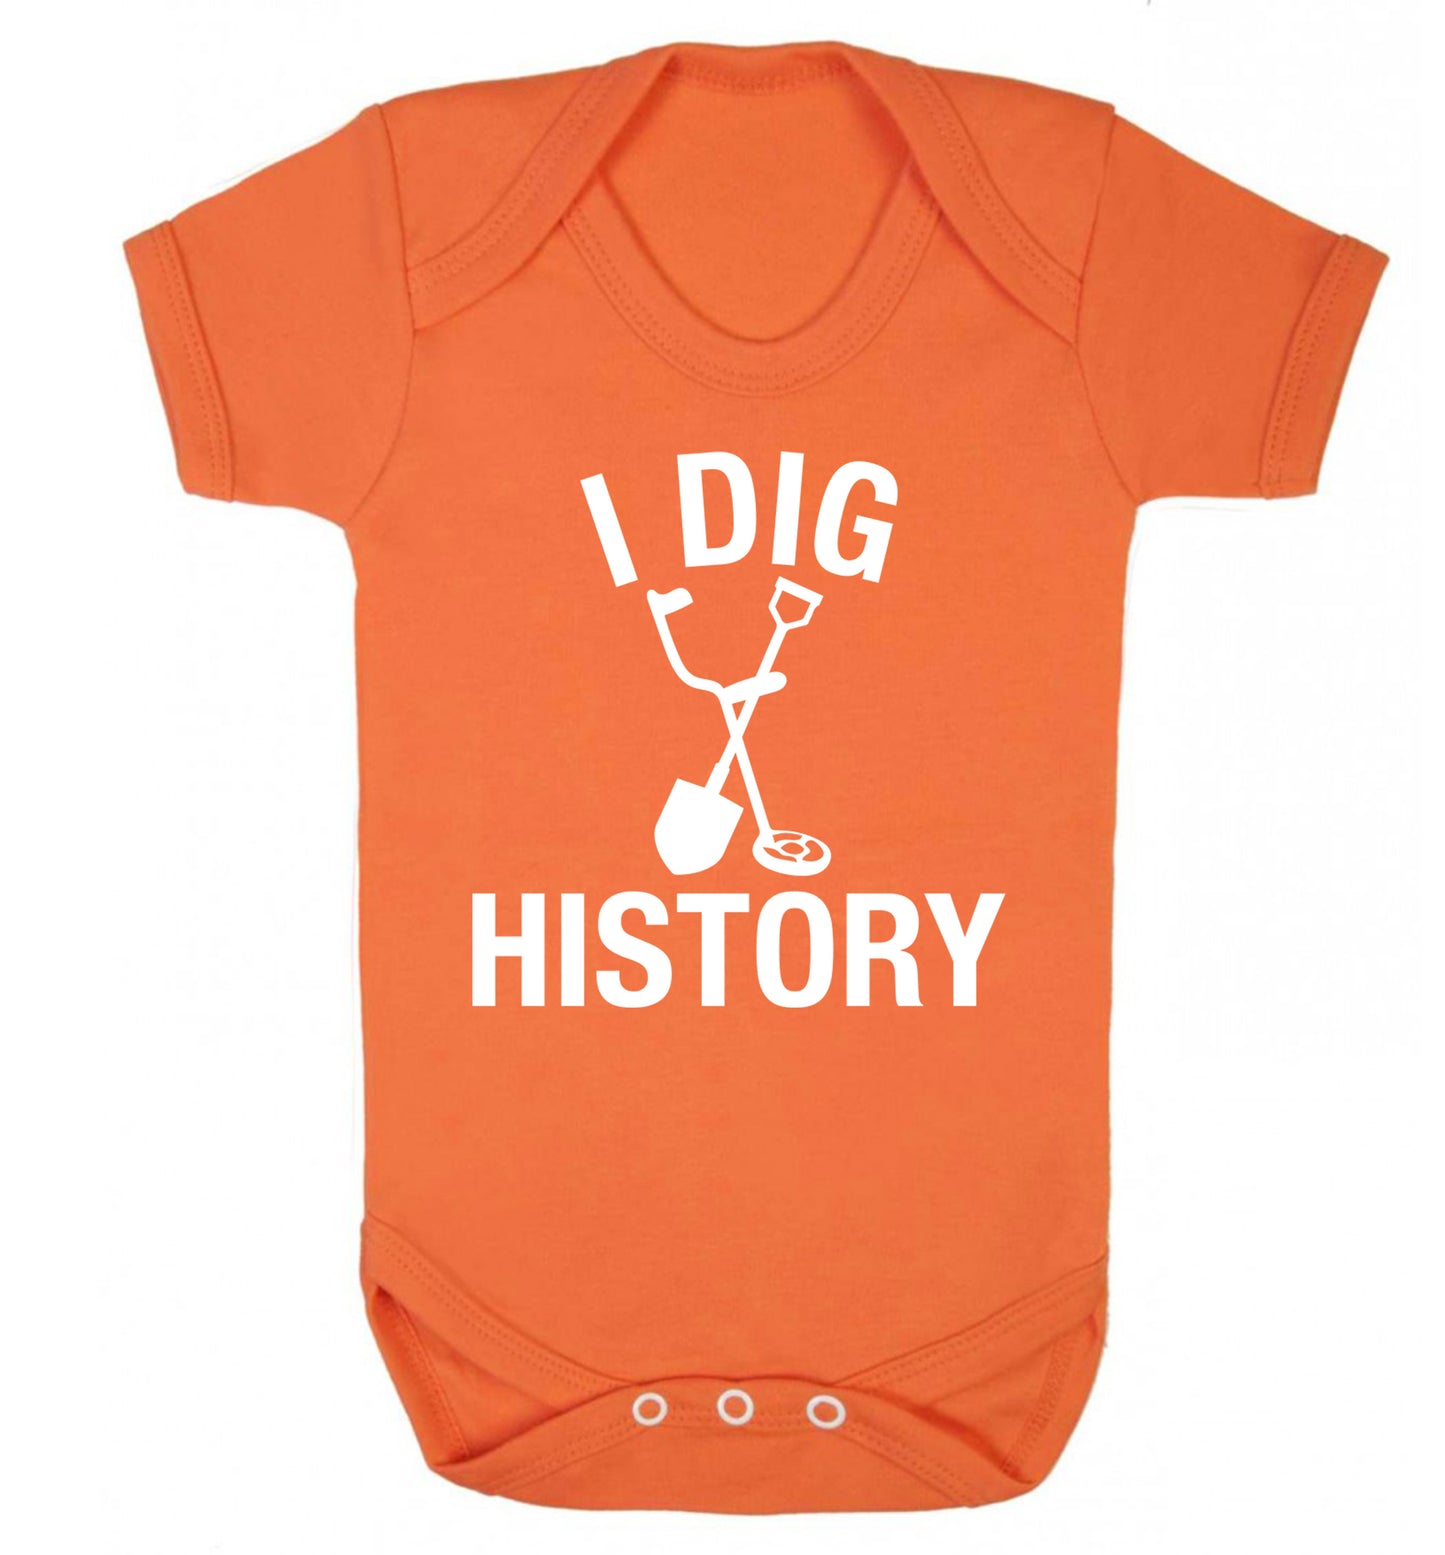 I dig history Baby Vest orange 18-24 months